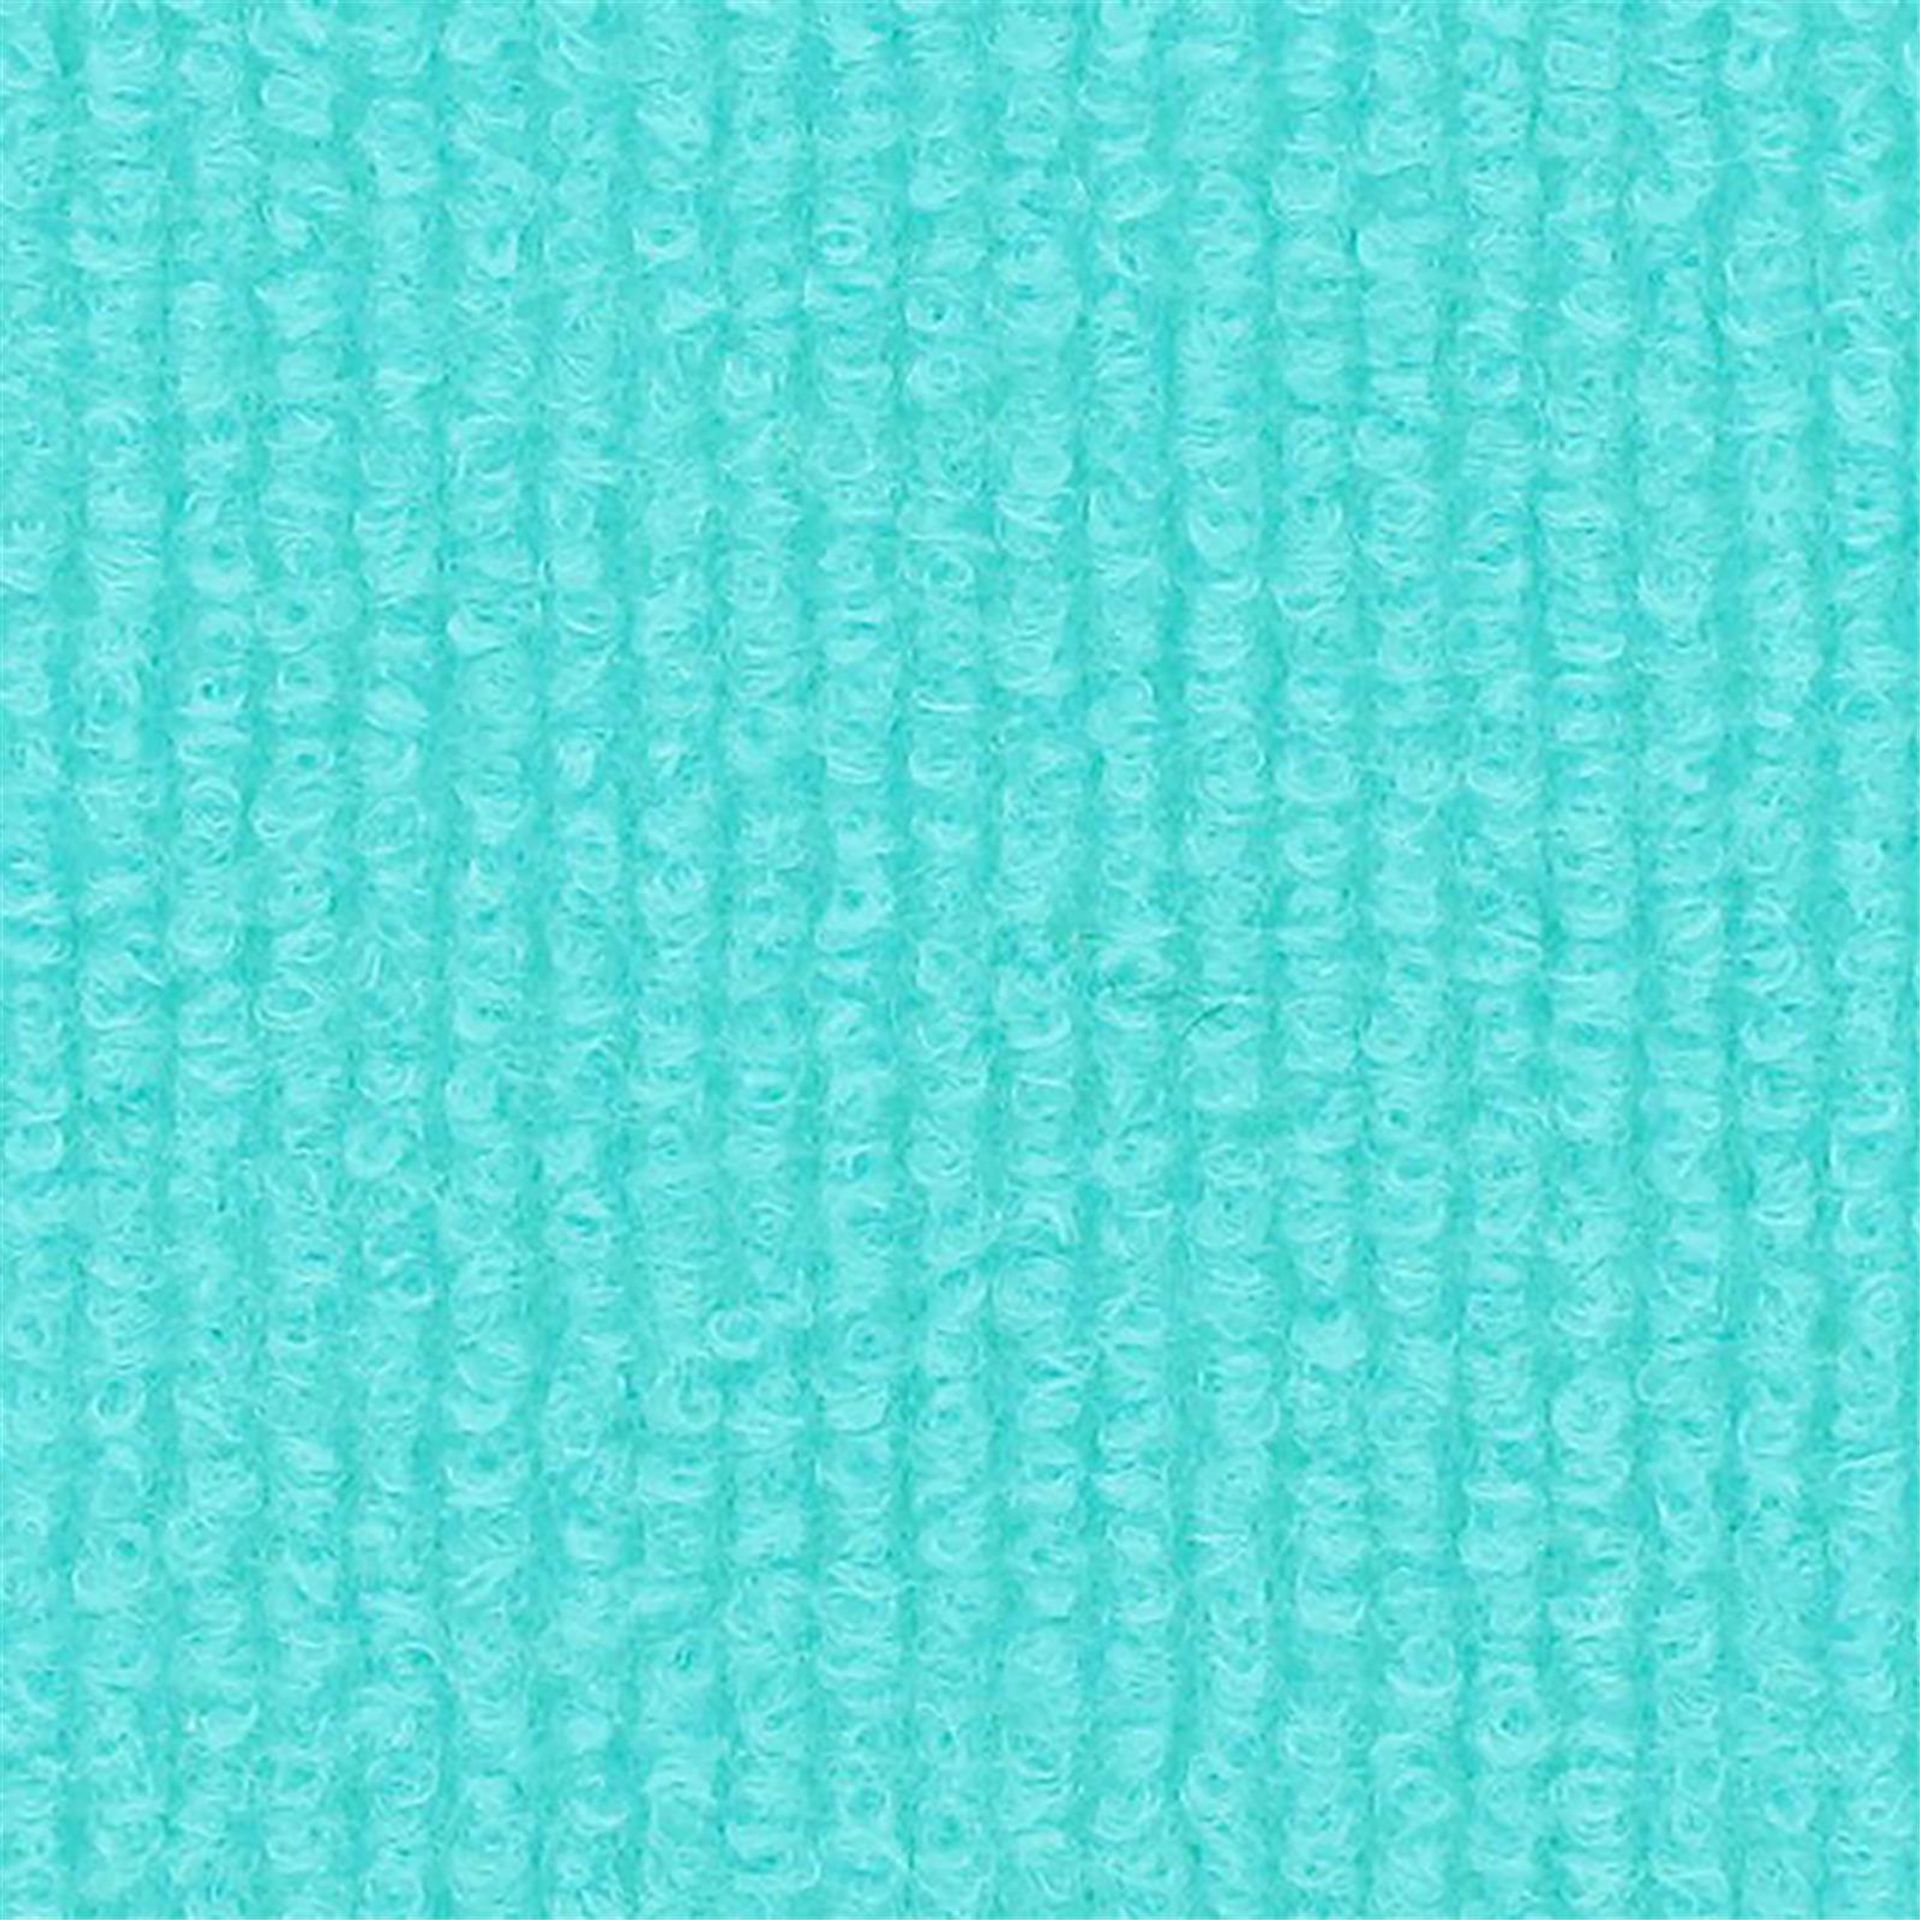 Messeboden Rips-Nadelvlies EXPOLINE Turquoise 0924 100qm ohne Schutzfolie - Rollenbreite 200 cm